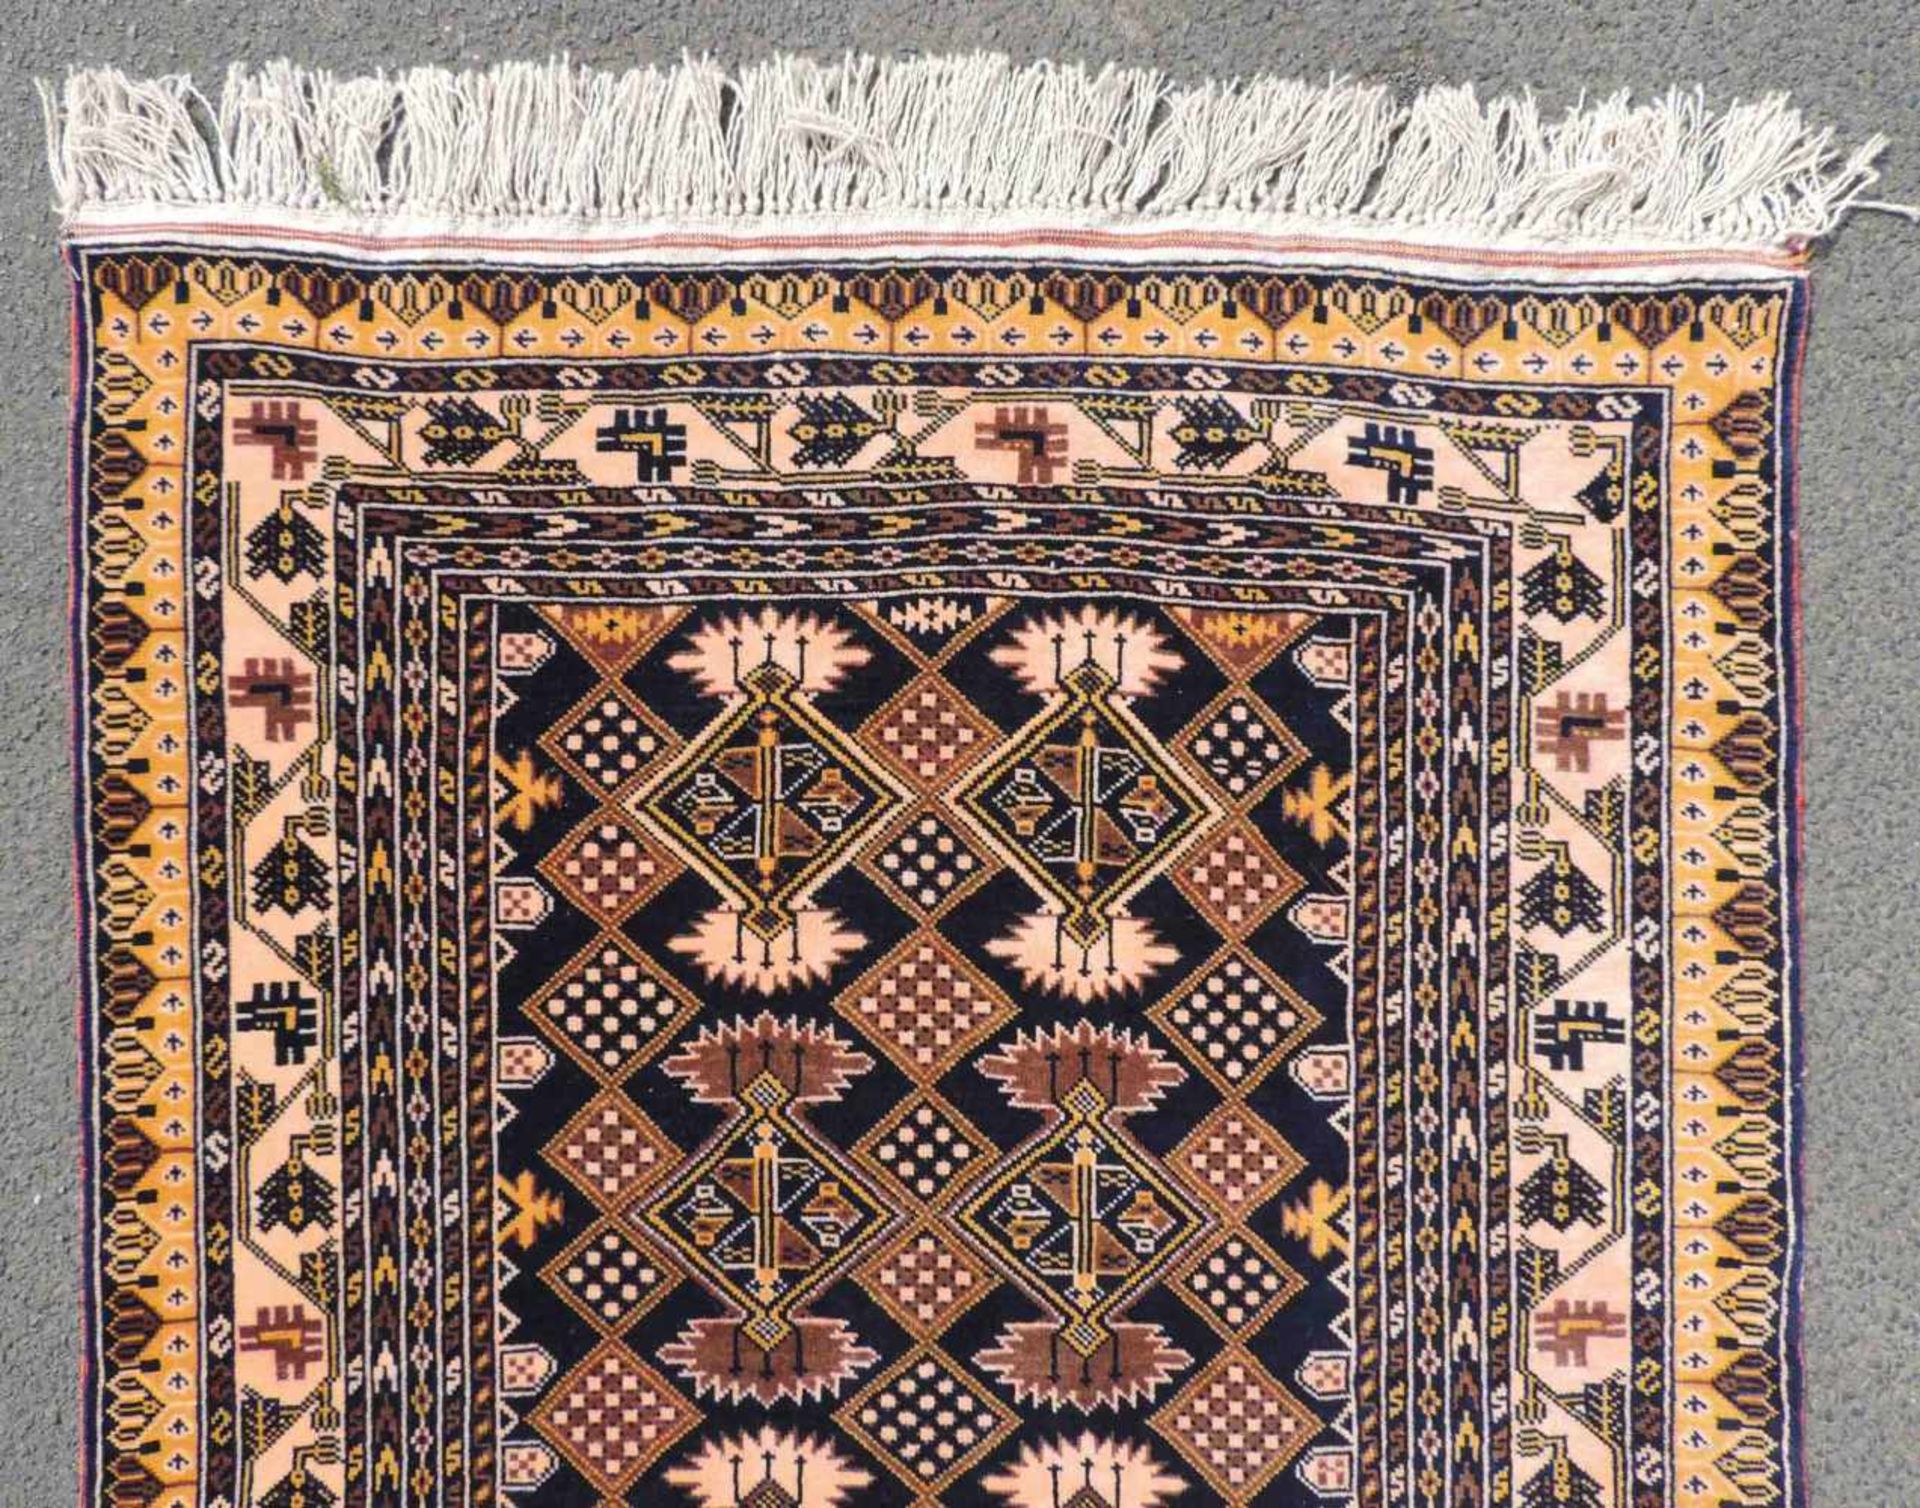 Mauri Stammesteppich. Afghanistan. Alt. Feine Knüpfung.145 cm x 93 cm. Handgeknüpft. Wolle auf - Image 4 of 6